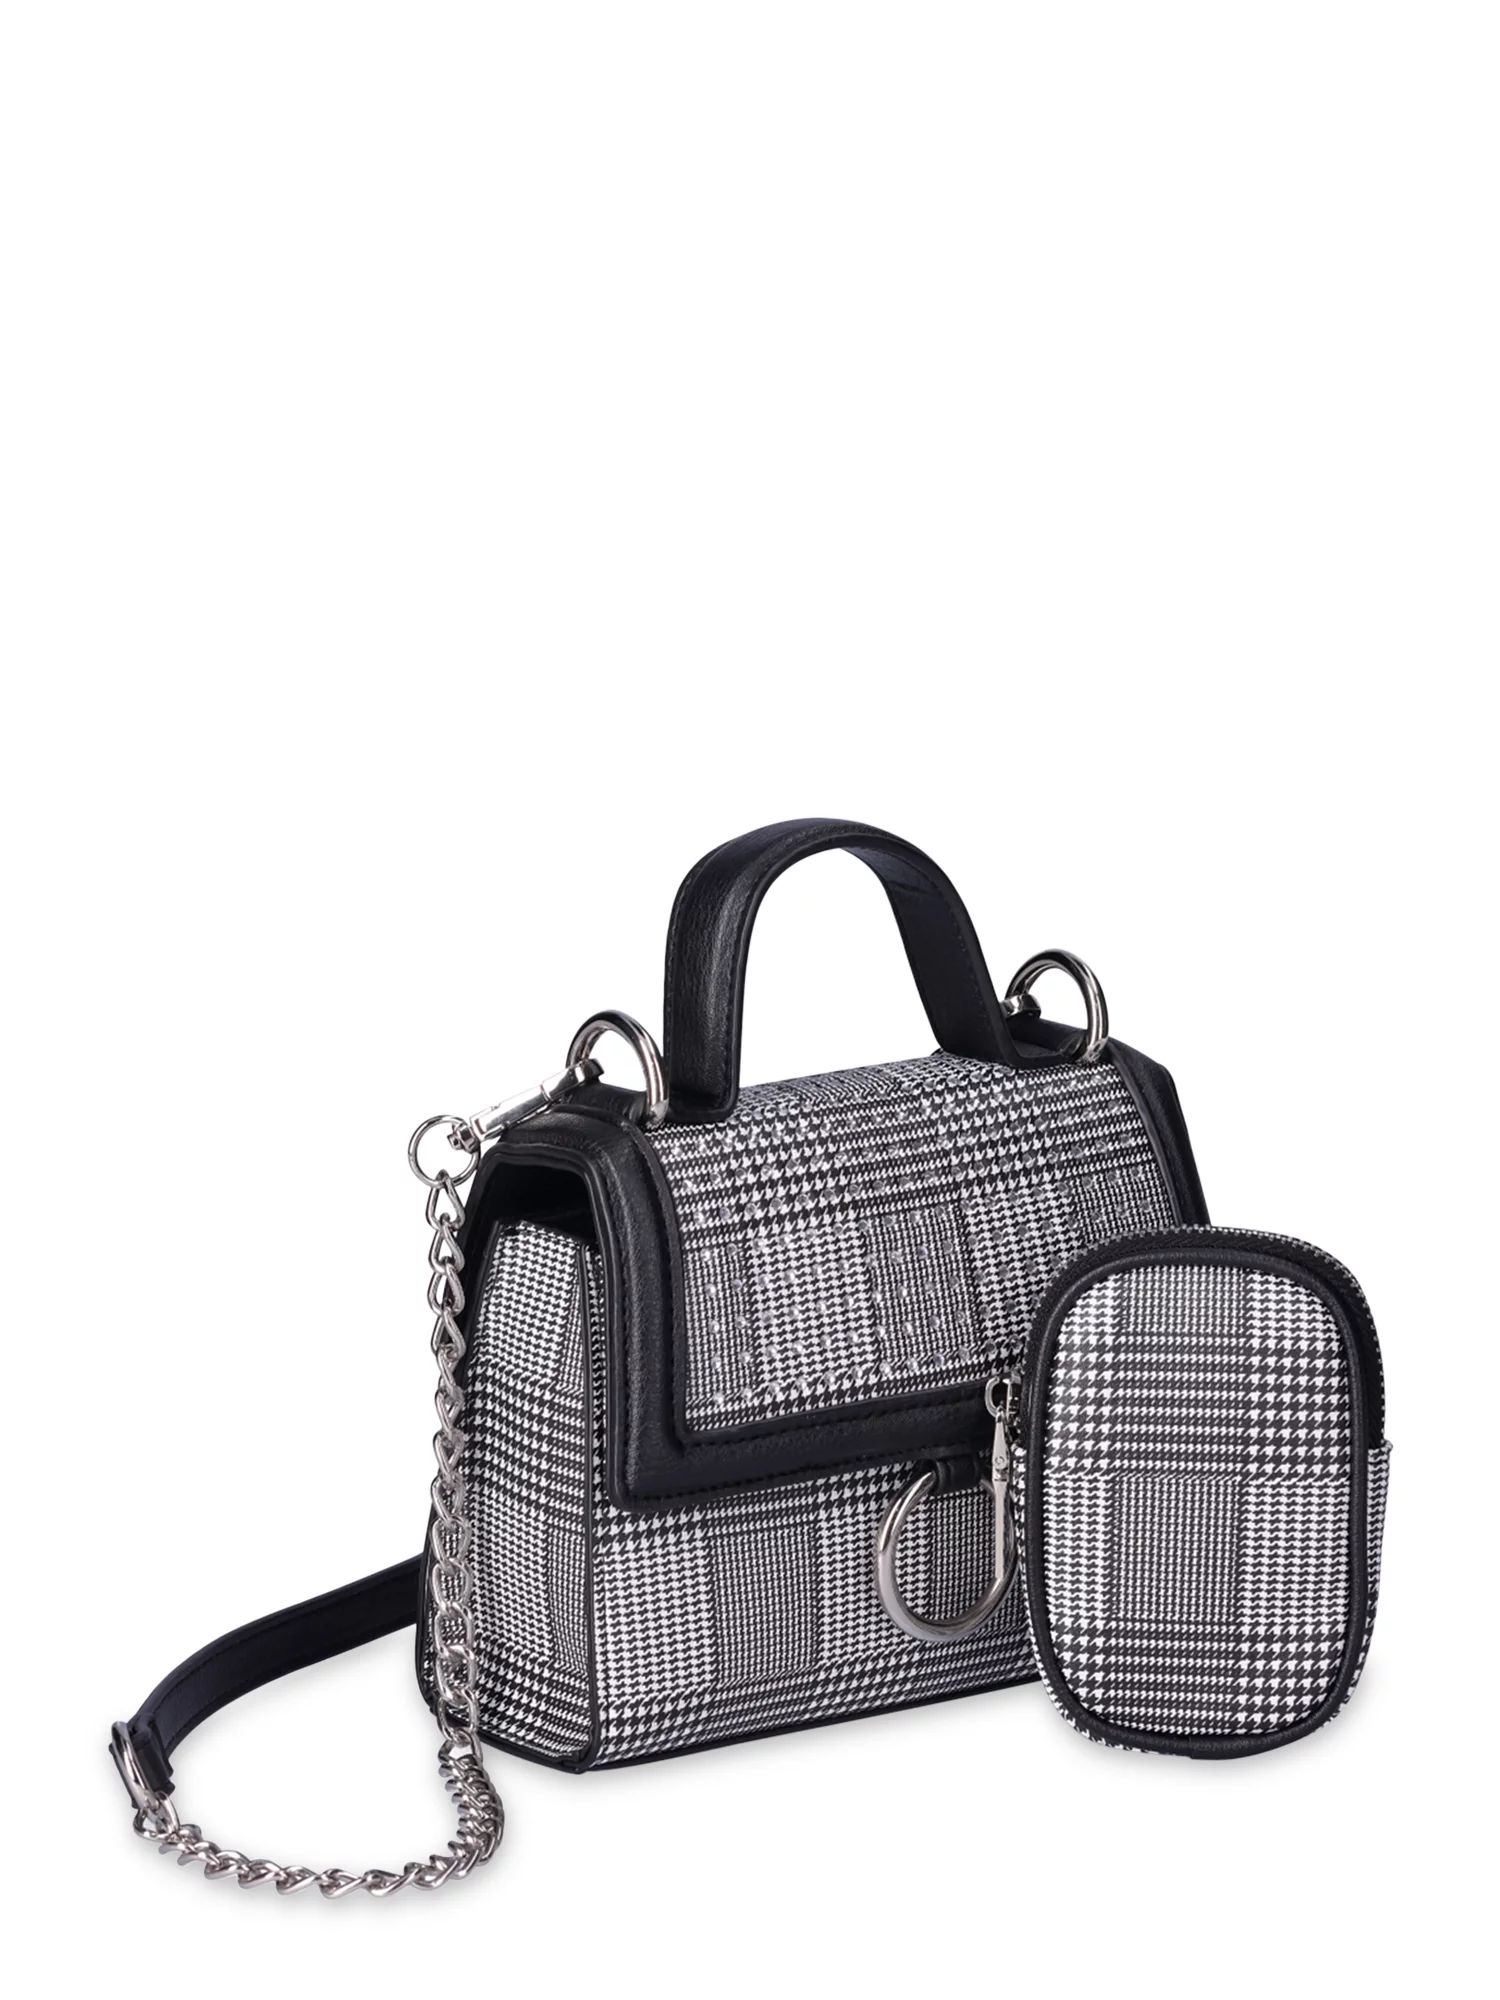 Madden NYC Women's Crystal Mini Top Handle Handbag, Houndstooth | Walmart (US)